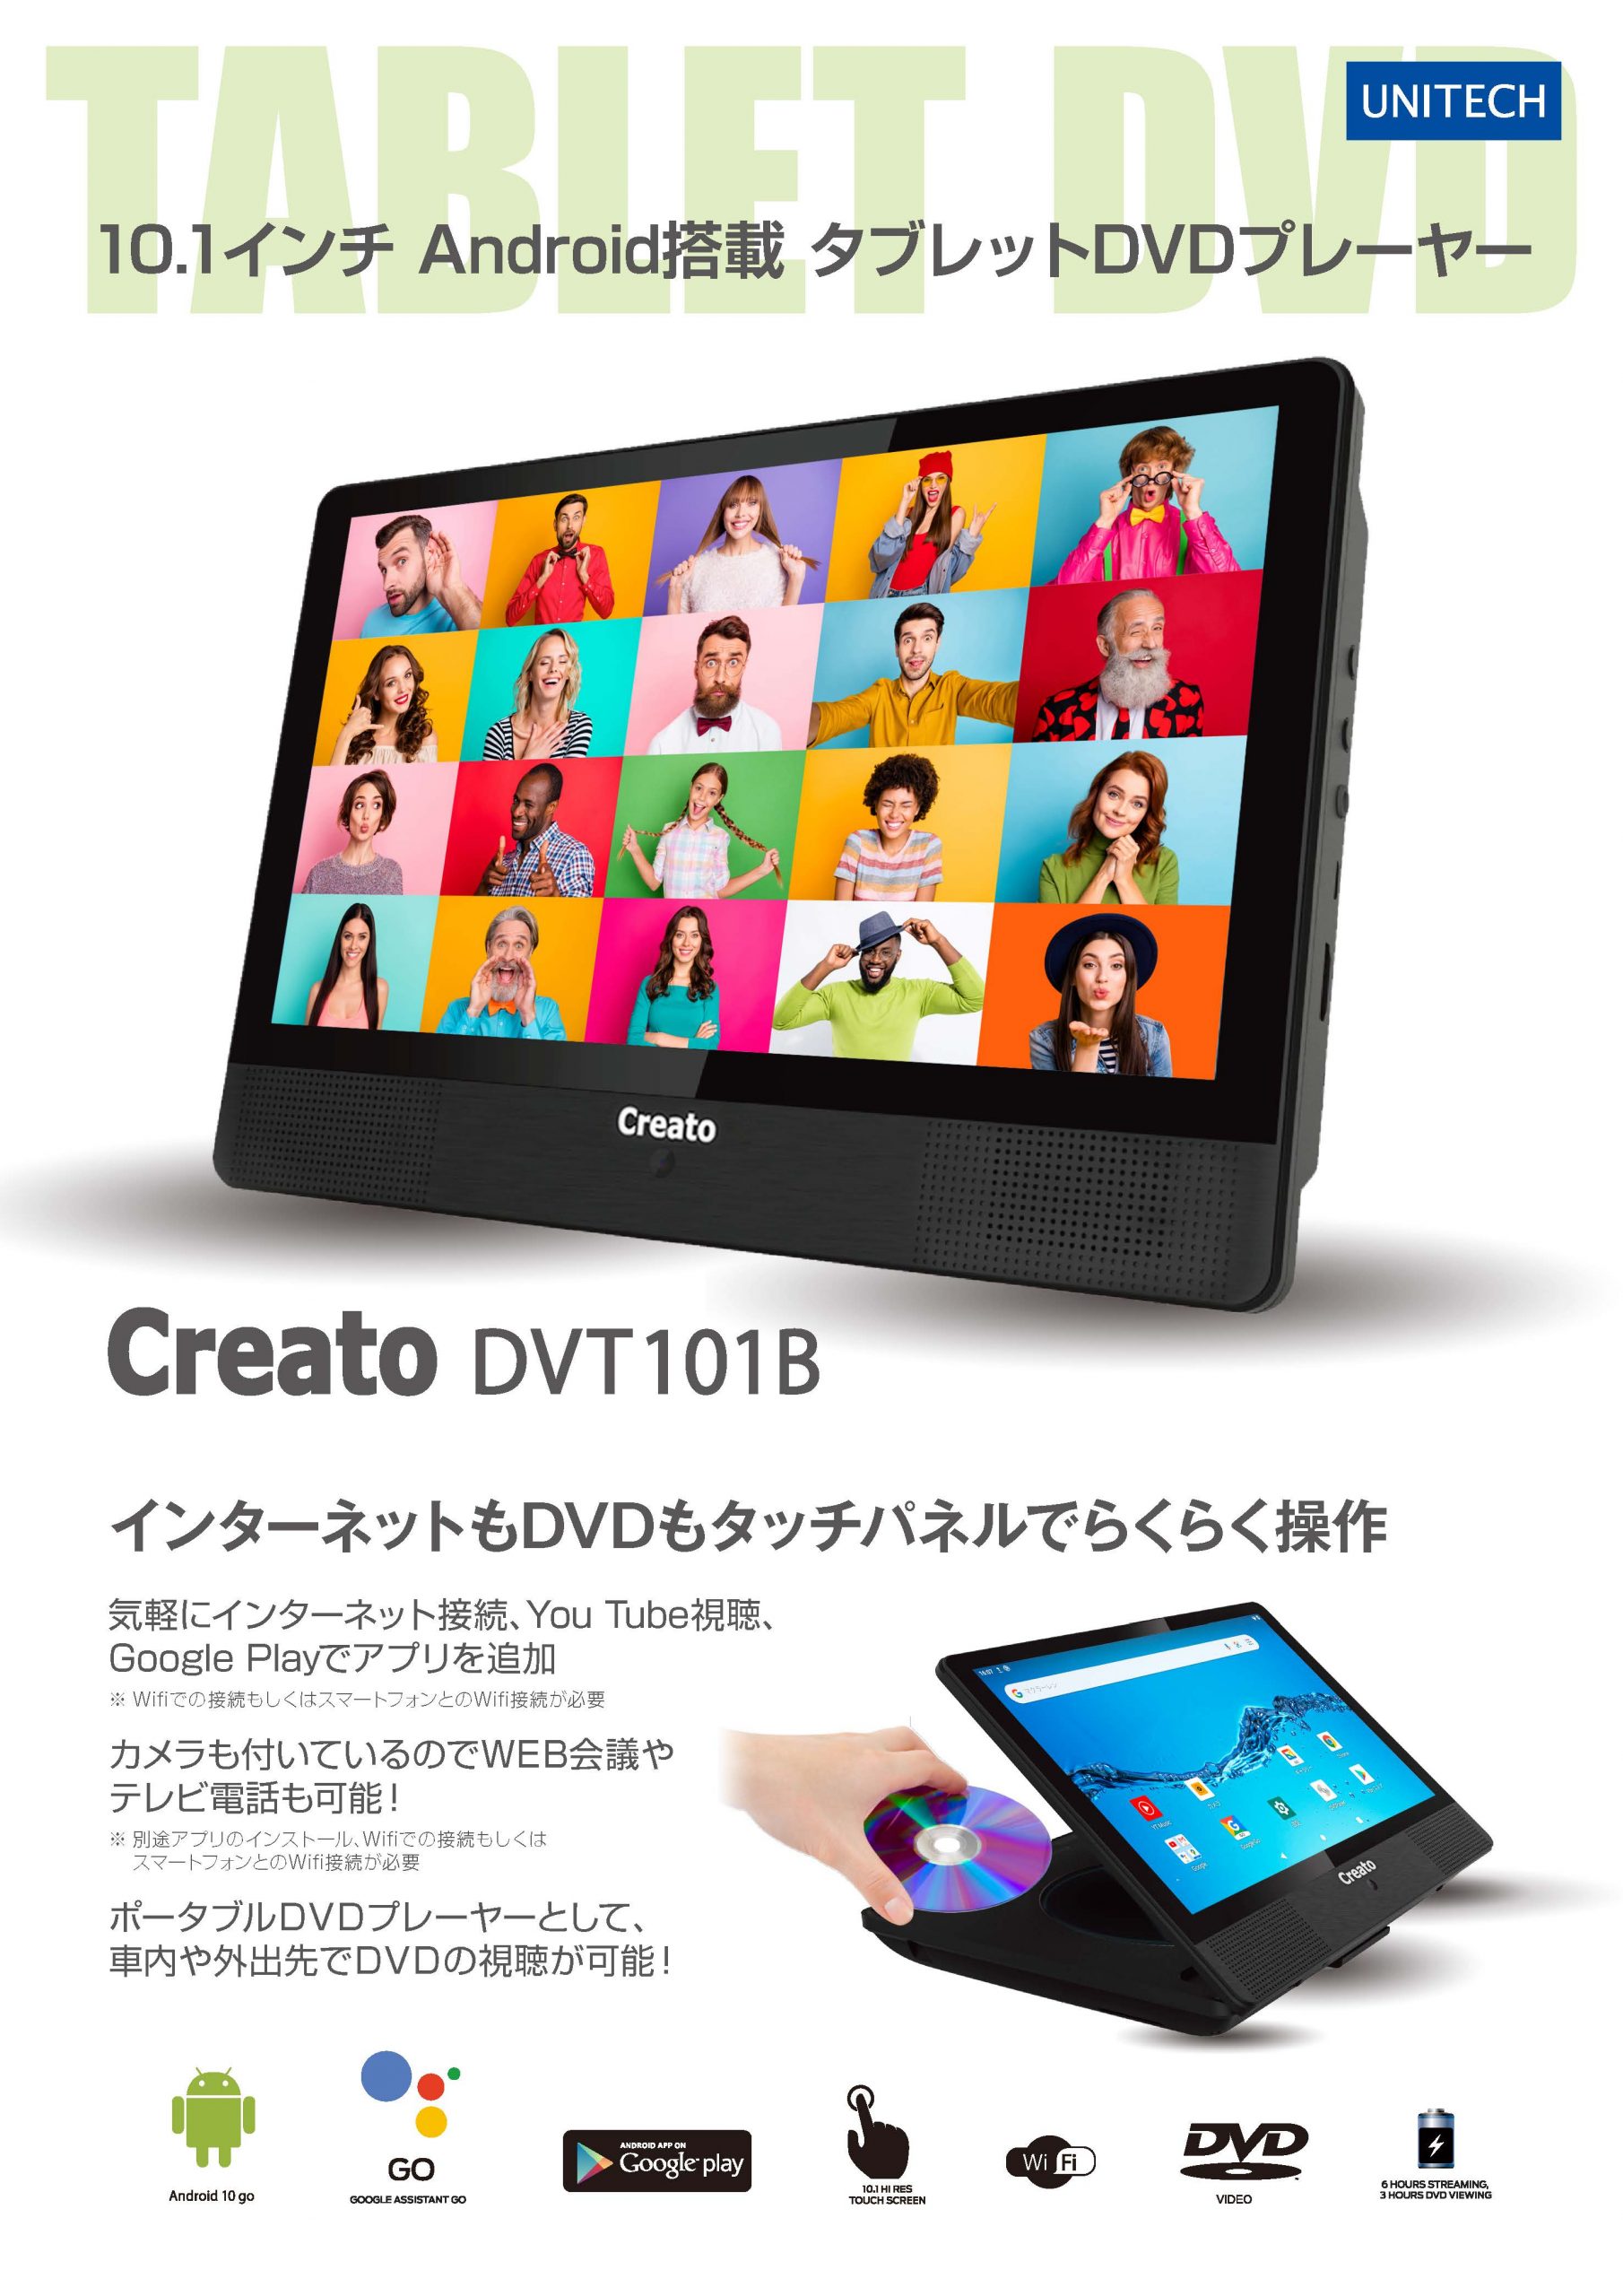 DVDプレーヤー内蔵 Android搭載タブレットをオンラインショップで販売を開始しました！ | 株式会社ユニテク